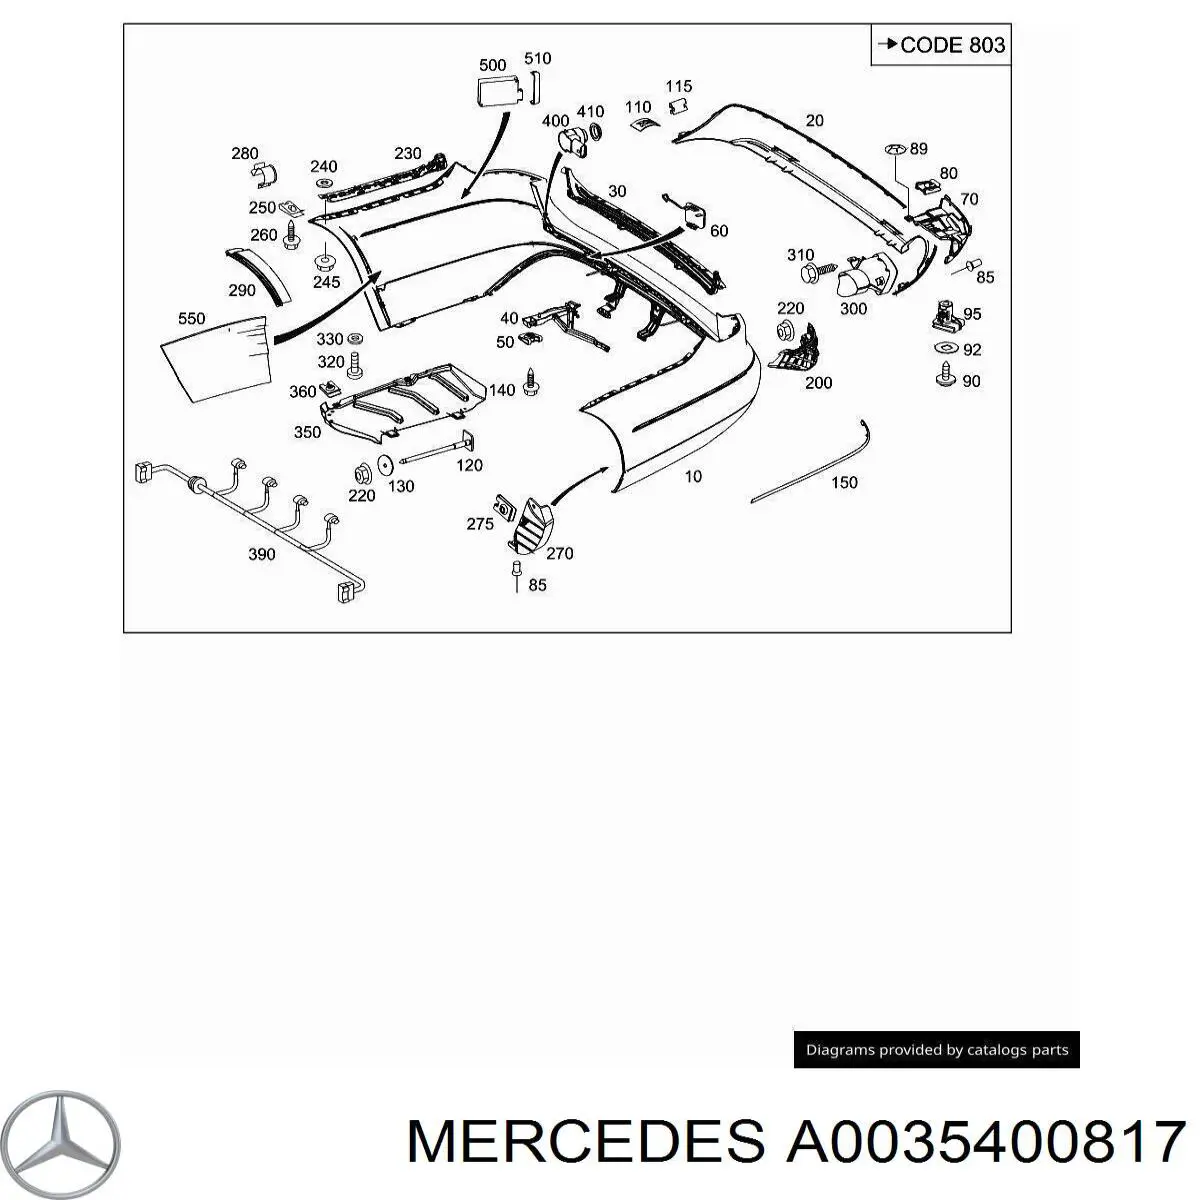 Sensor de control de ángulo muerto trasero para Mercedes ML/GLE (W166)